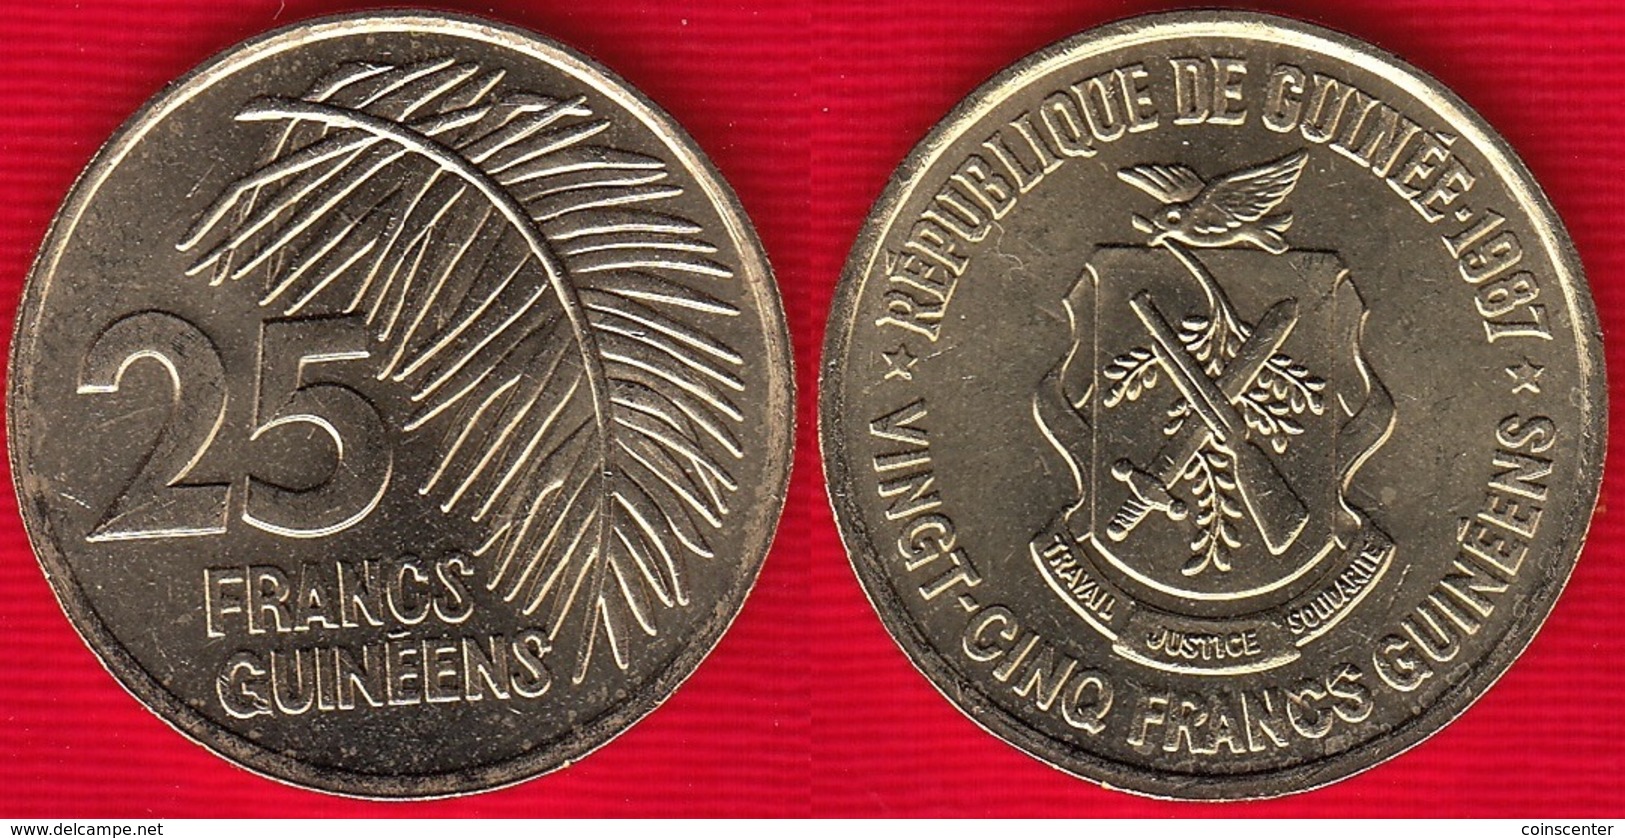 Guinea 25 Francs Guineens 1987 Km#60 UNC - Guinée